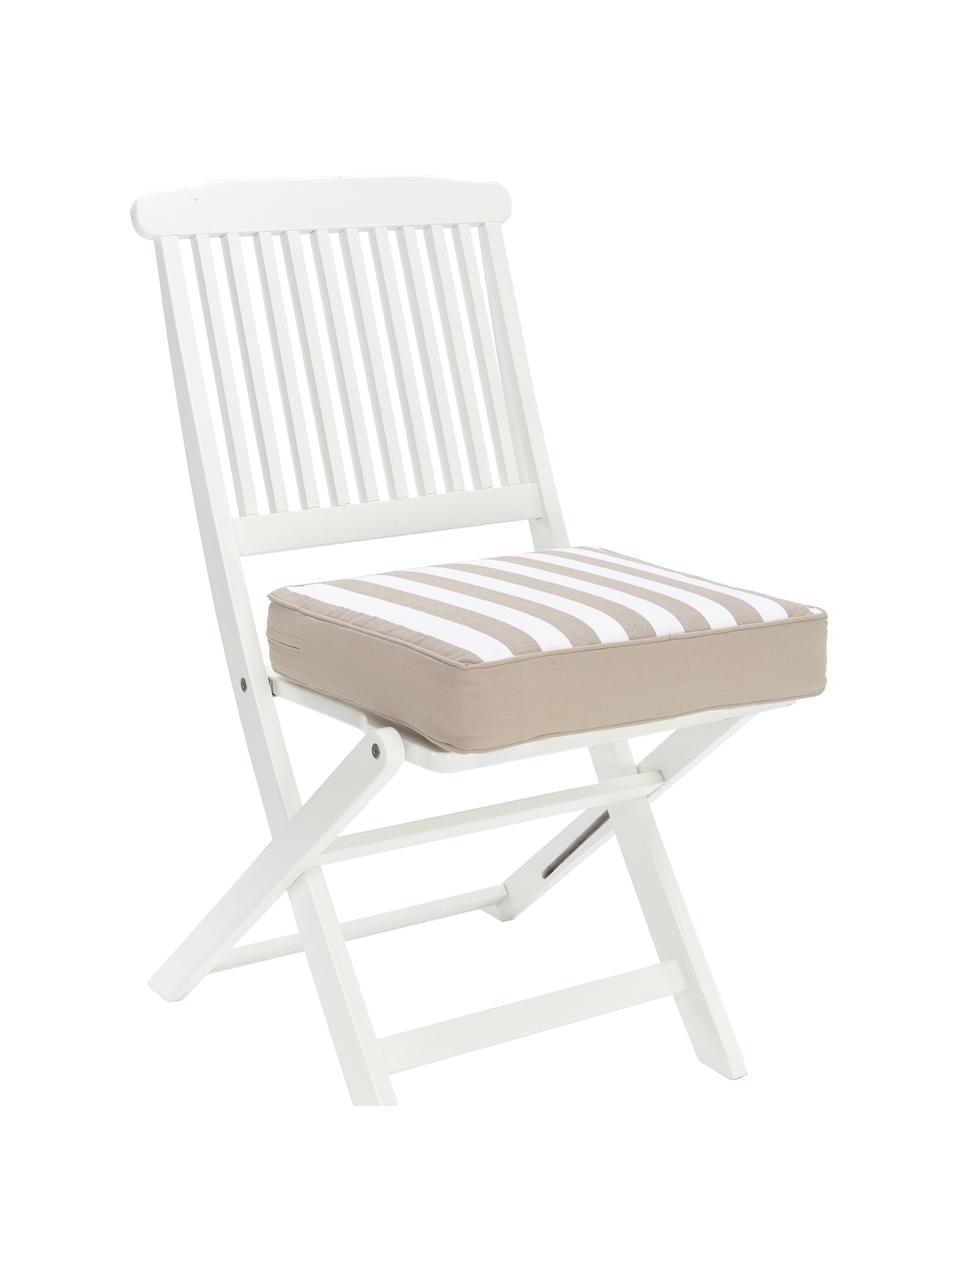 Hohes Sitzkissen Timon, gestreift, Bezug: 100% Baumwolle, Beige, Weiß, B 40 x L 40 cm